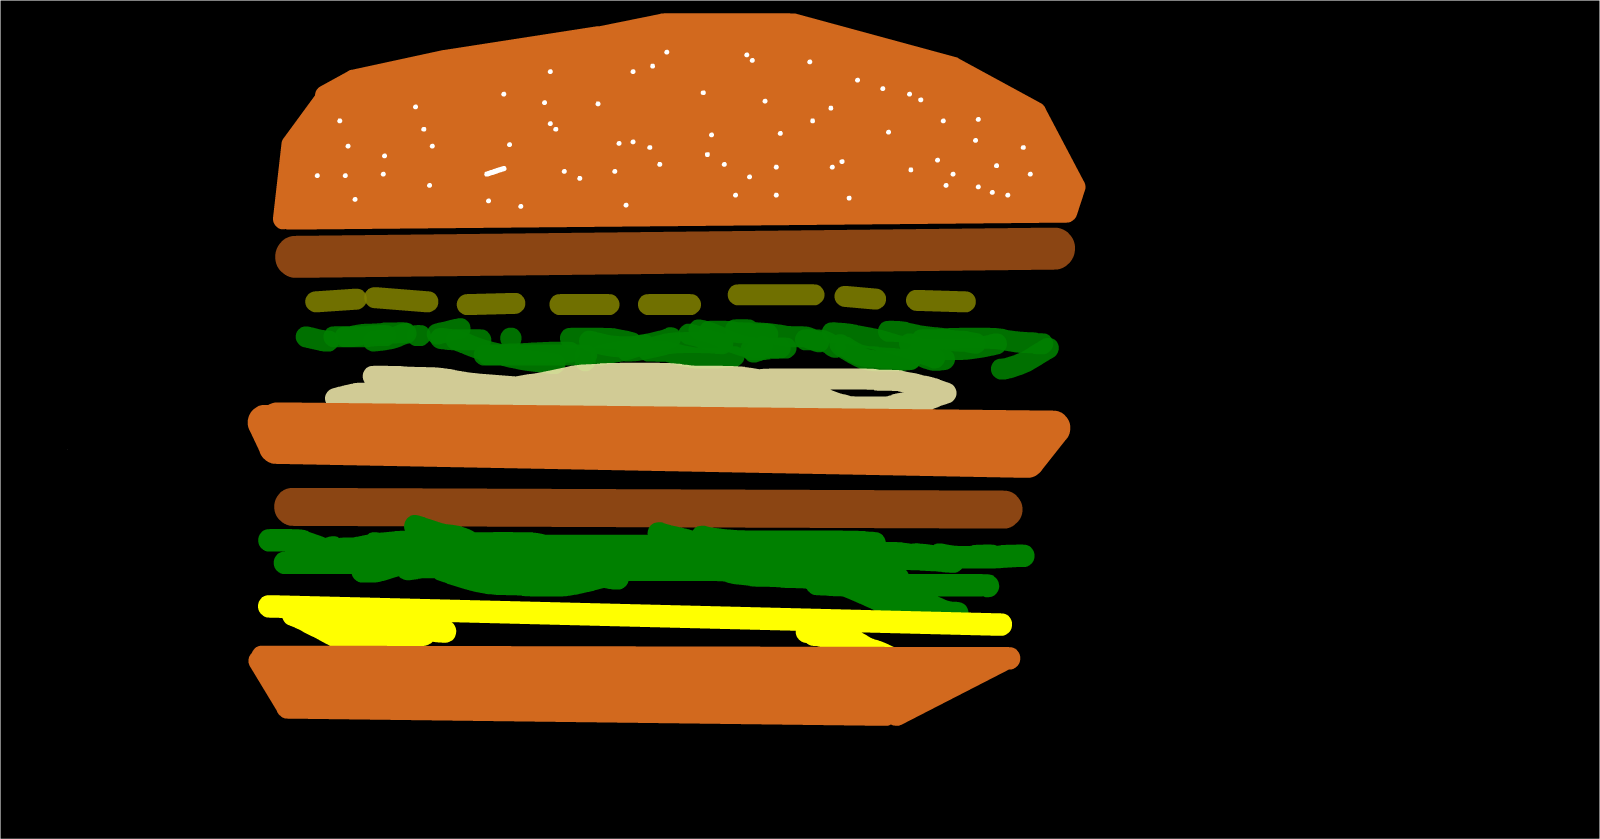 Hamburger Drawing 4: BIG MAC